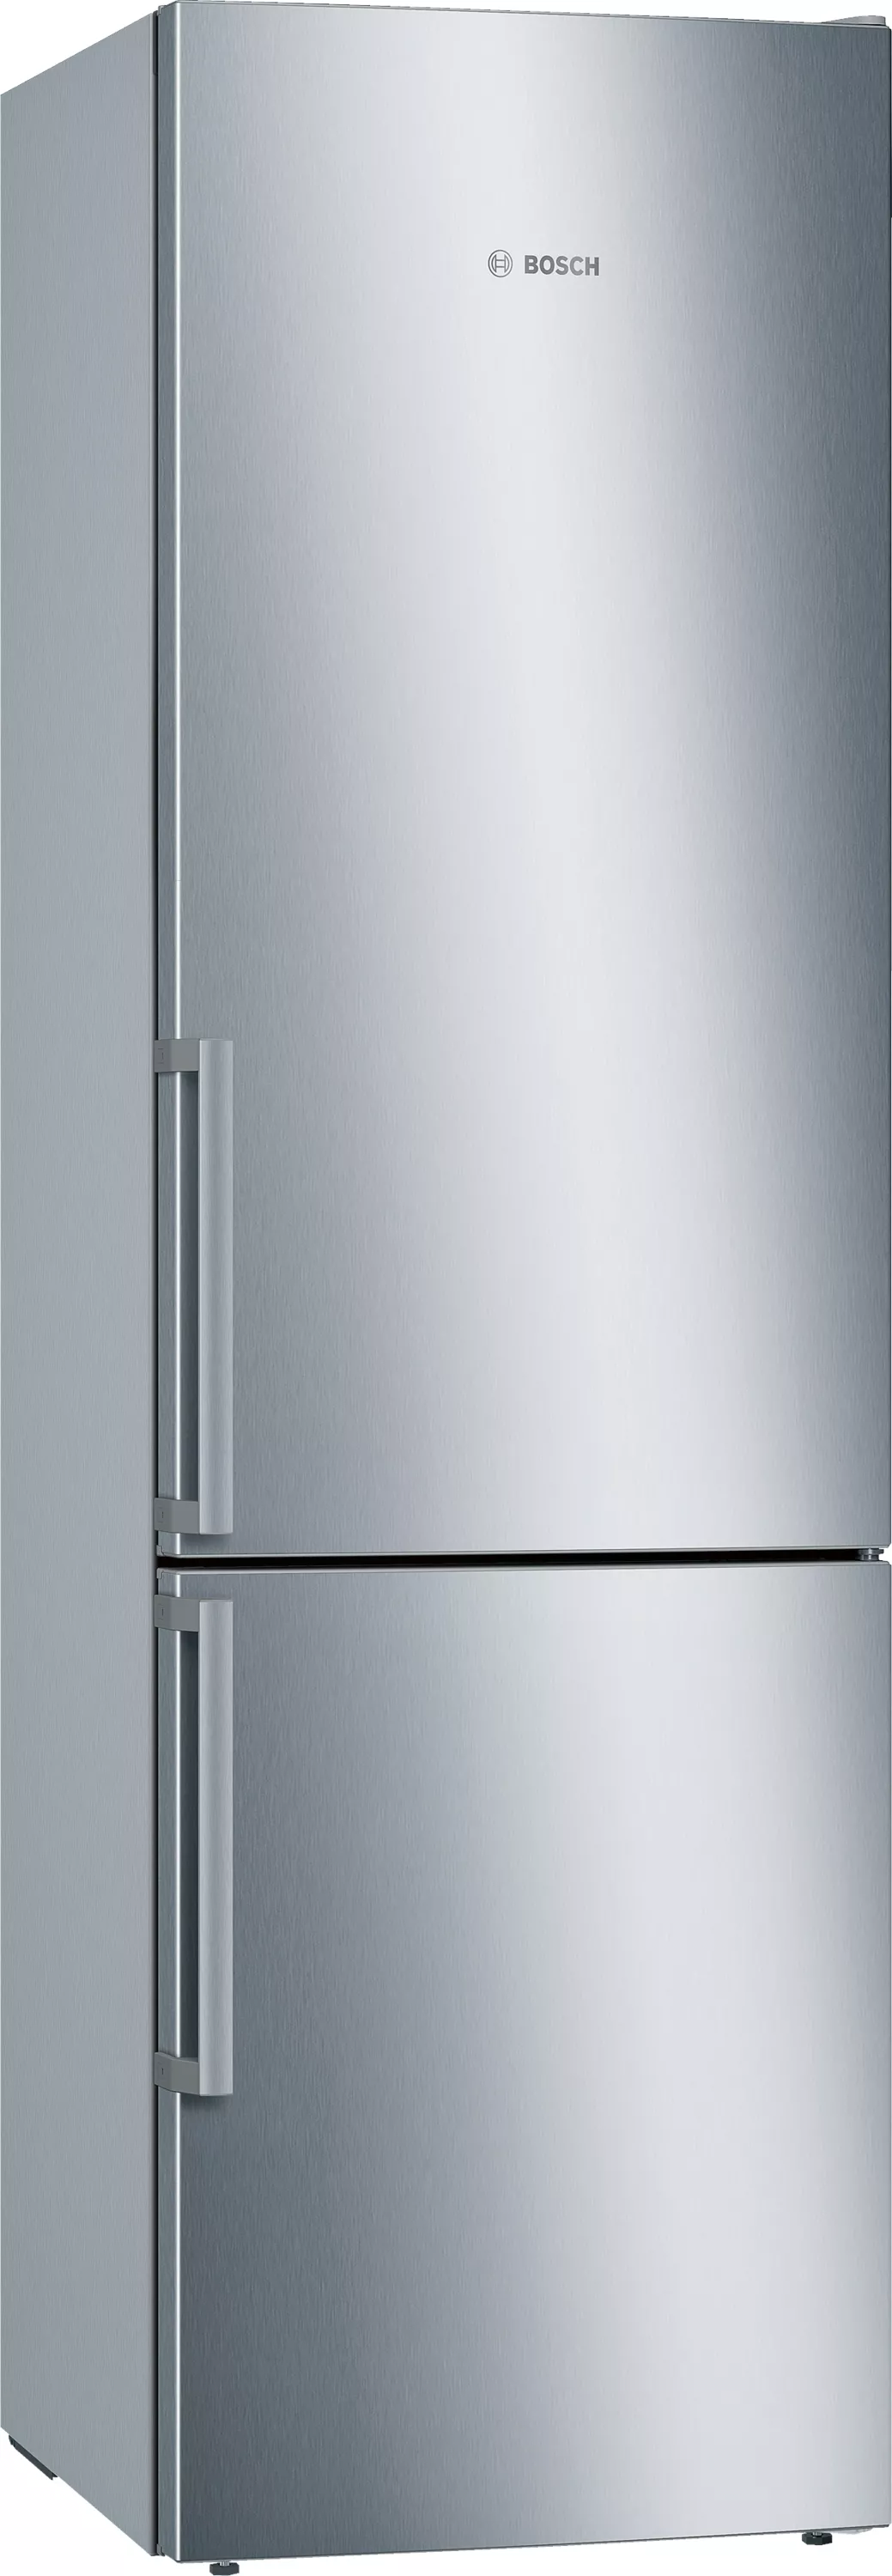 Bosch Serie 6, Freistehende Kühl-Gefrier-Kombination mit Gefrierbereich unten, 201 x 60 cm, Edelstahl (mit Antifingerprint), KGE398IBP